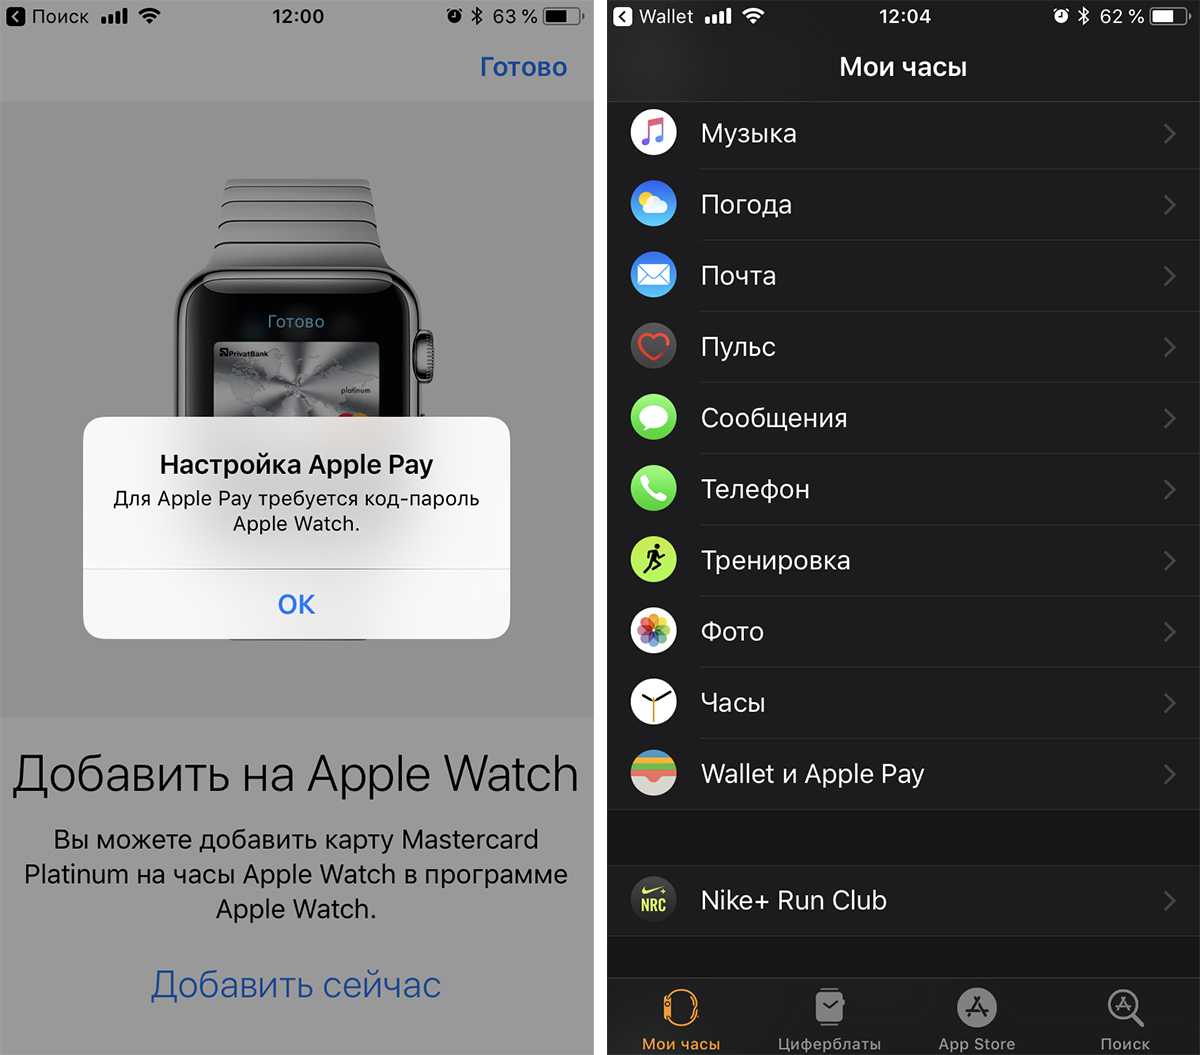 Как подключить apple watch к iphone - инструкция тарифкин.ру
как подключить apple watch к iphone - инструкция